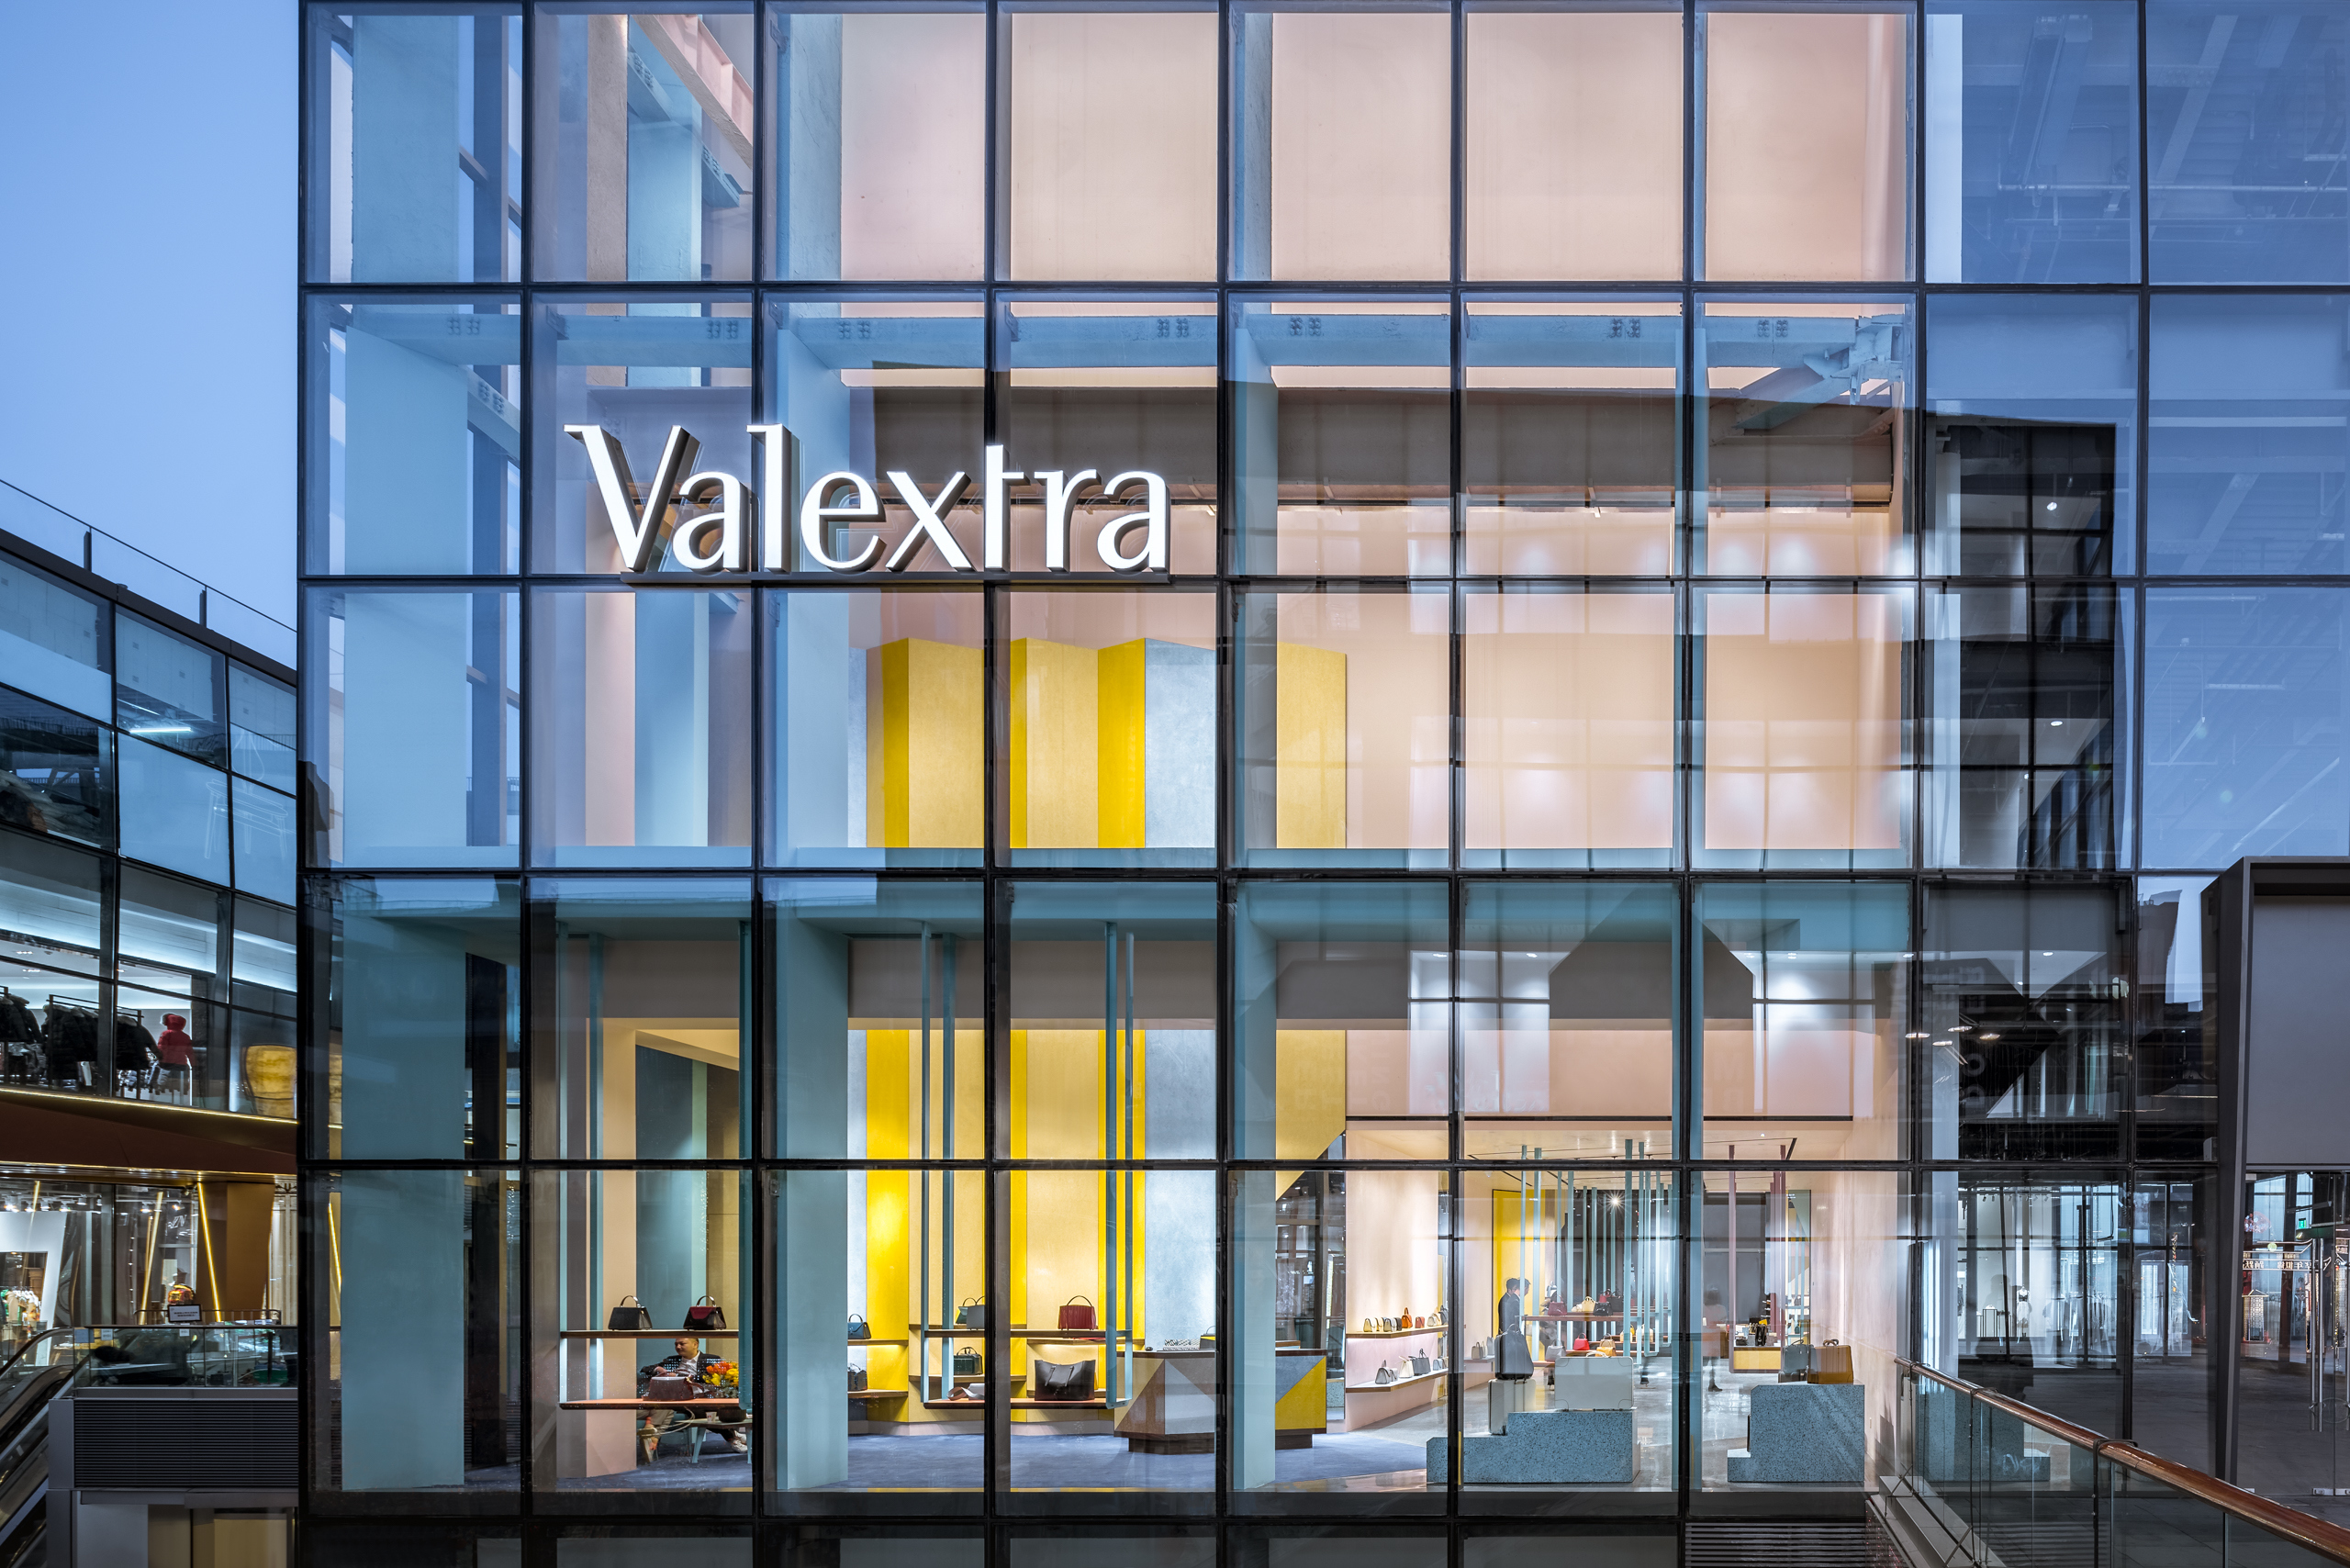 奢侈品不能偷工減料！我們要打造一個永留於世的品牌_專訪義大利頂級皮具品牌Valextra全球CEO_01.jpg